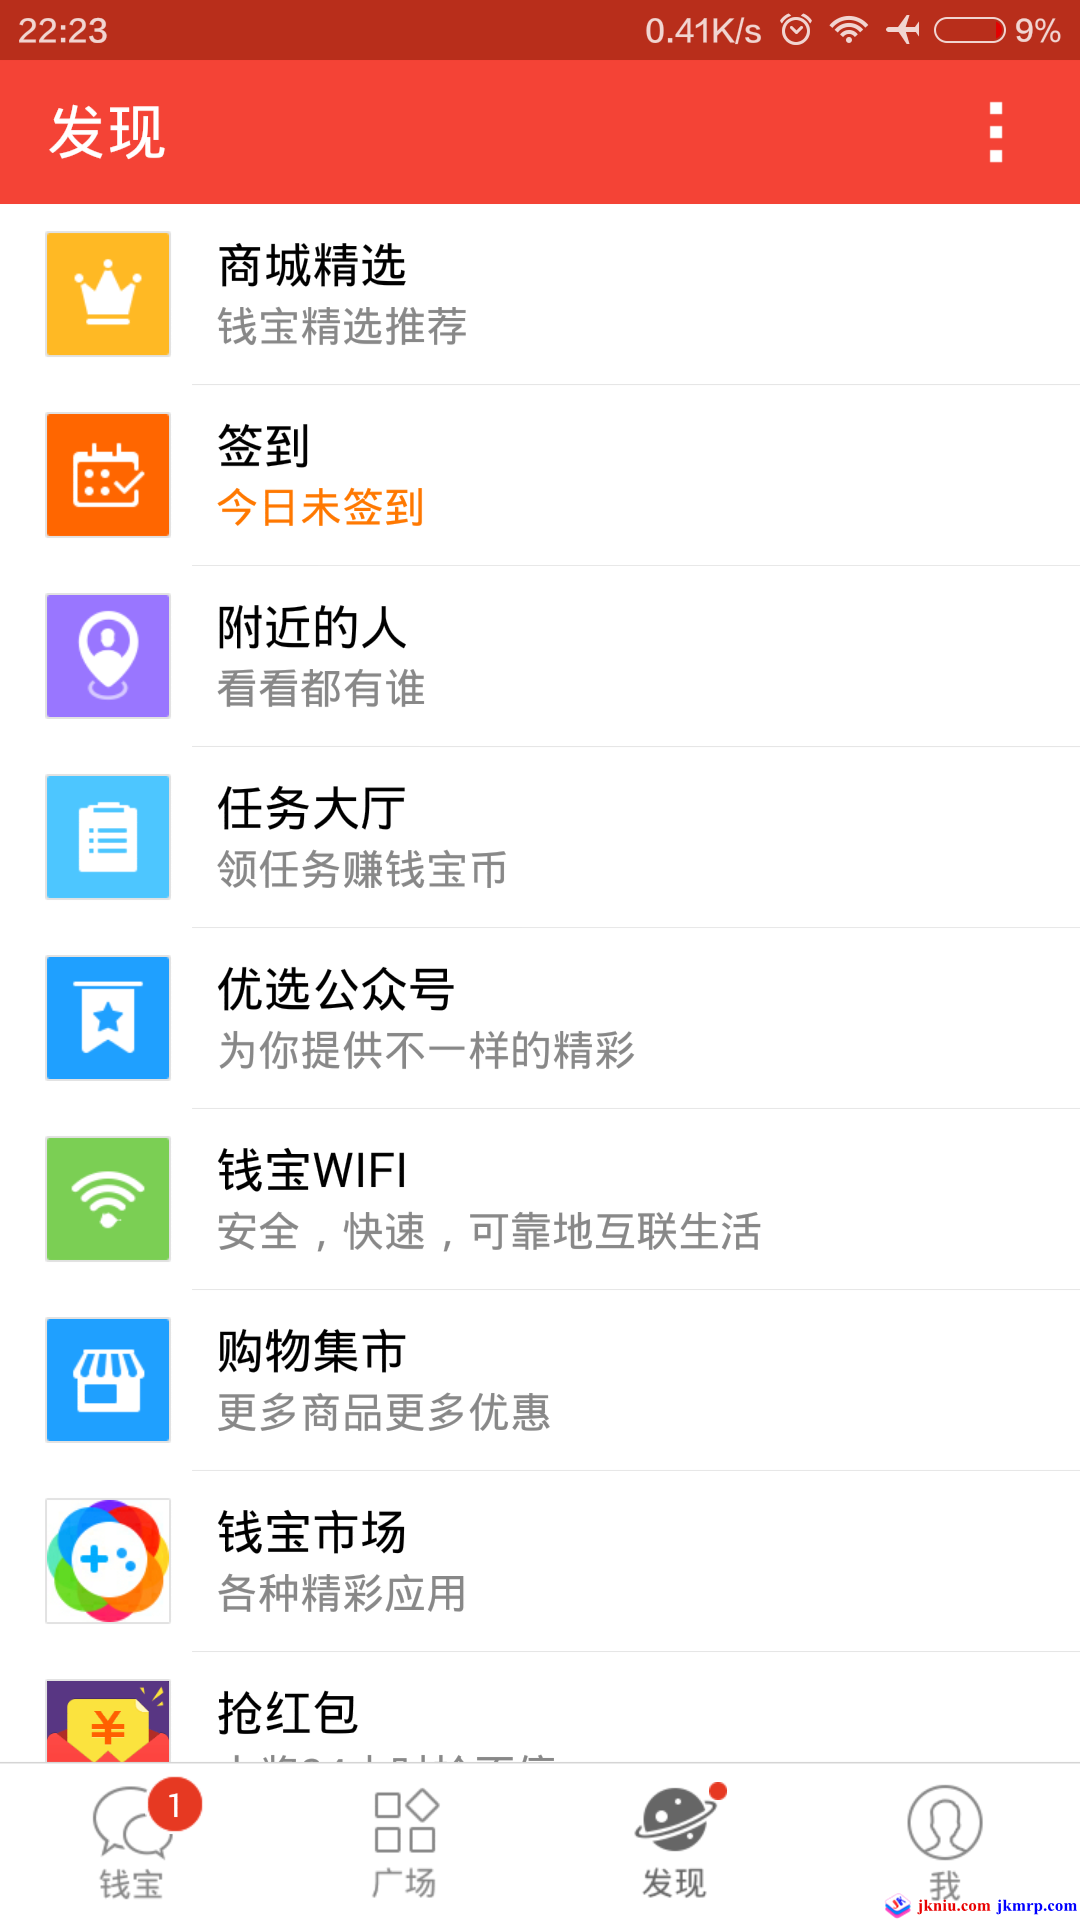 screenshot_com.qianwang.qianbao_2015-10-02-22-23-59